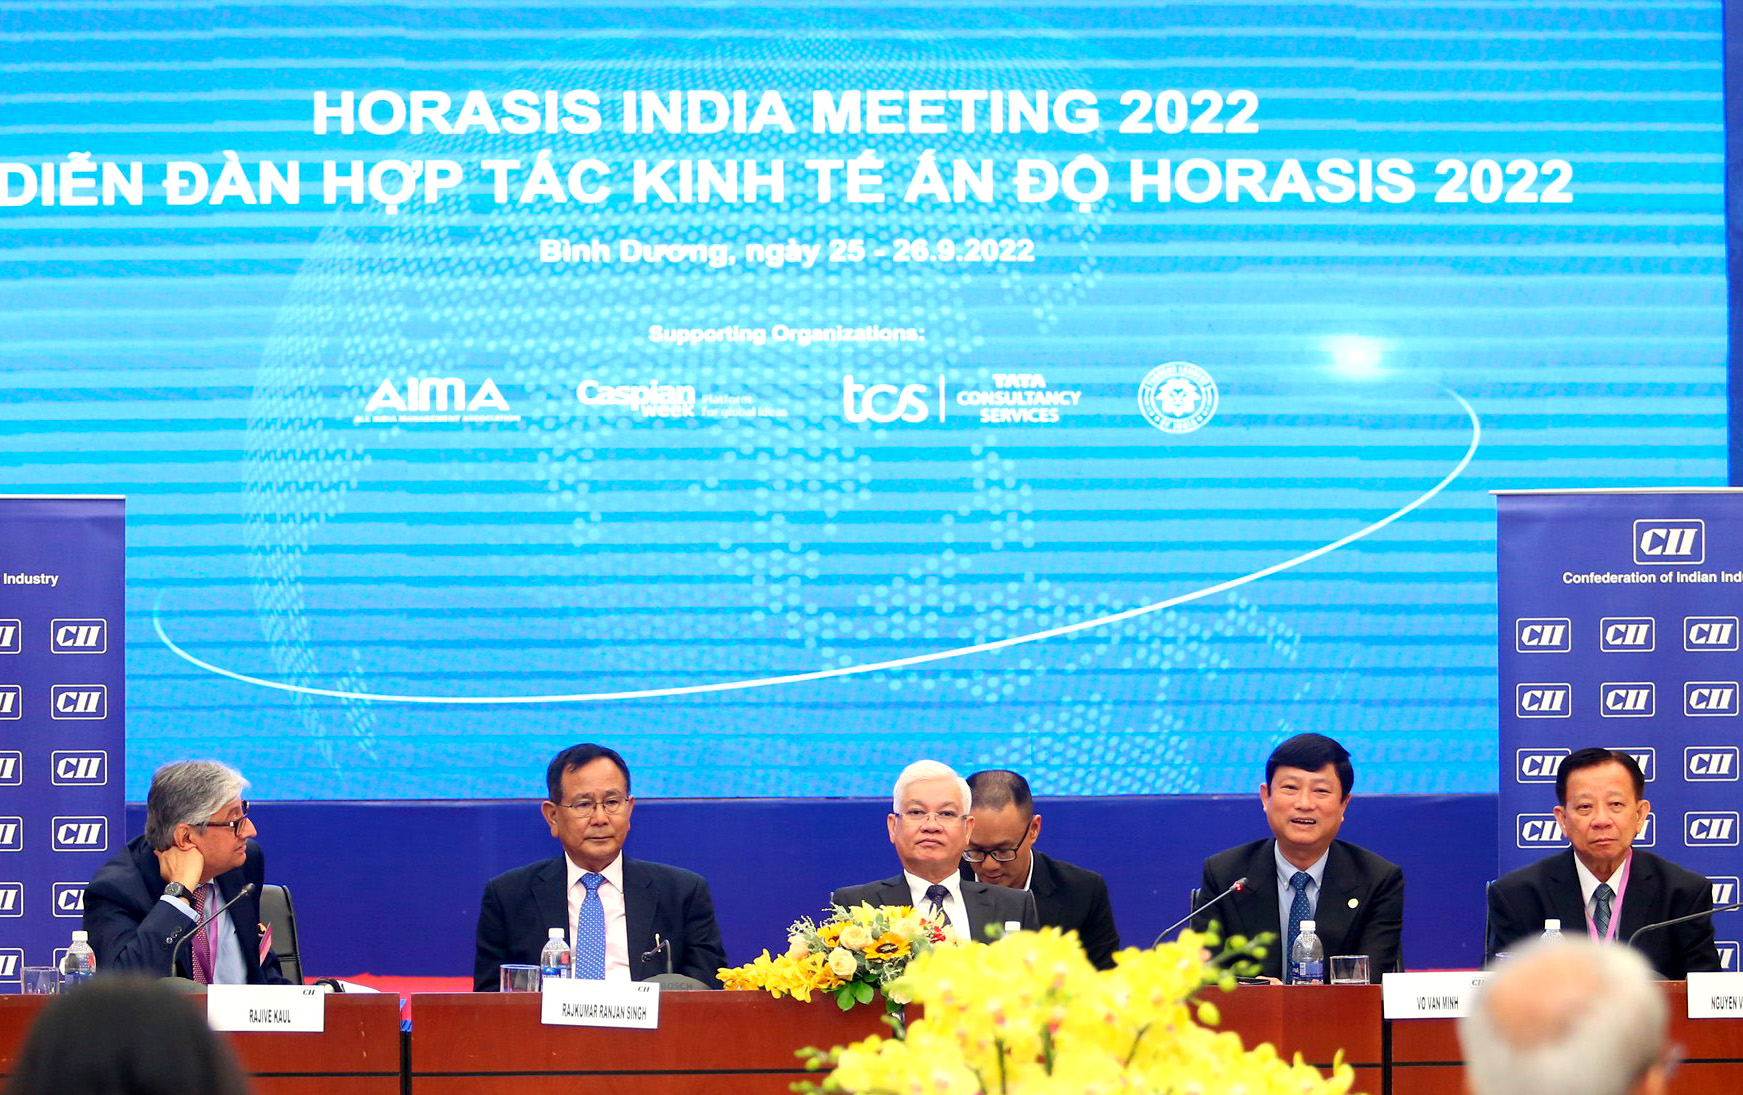 Đồng chí Võ Văn Minh - Chủ tịch UBND tỉnh tại Diễn đàn hợp tác kinh tế Horasis Ấn Độ 2022.